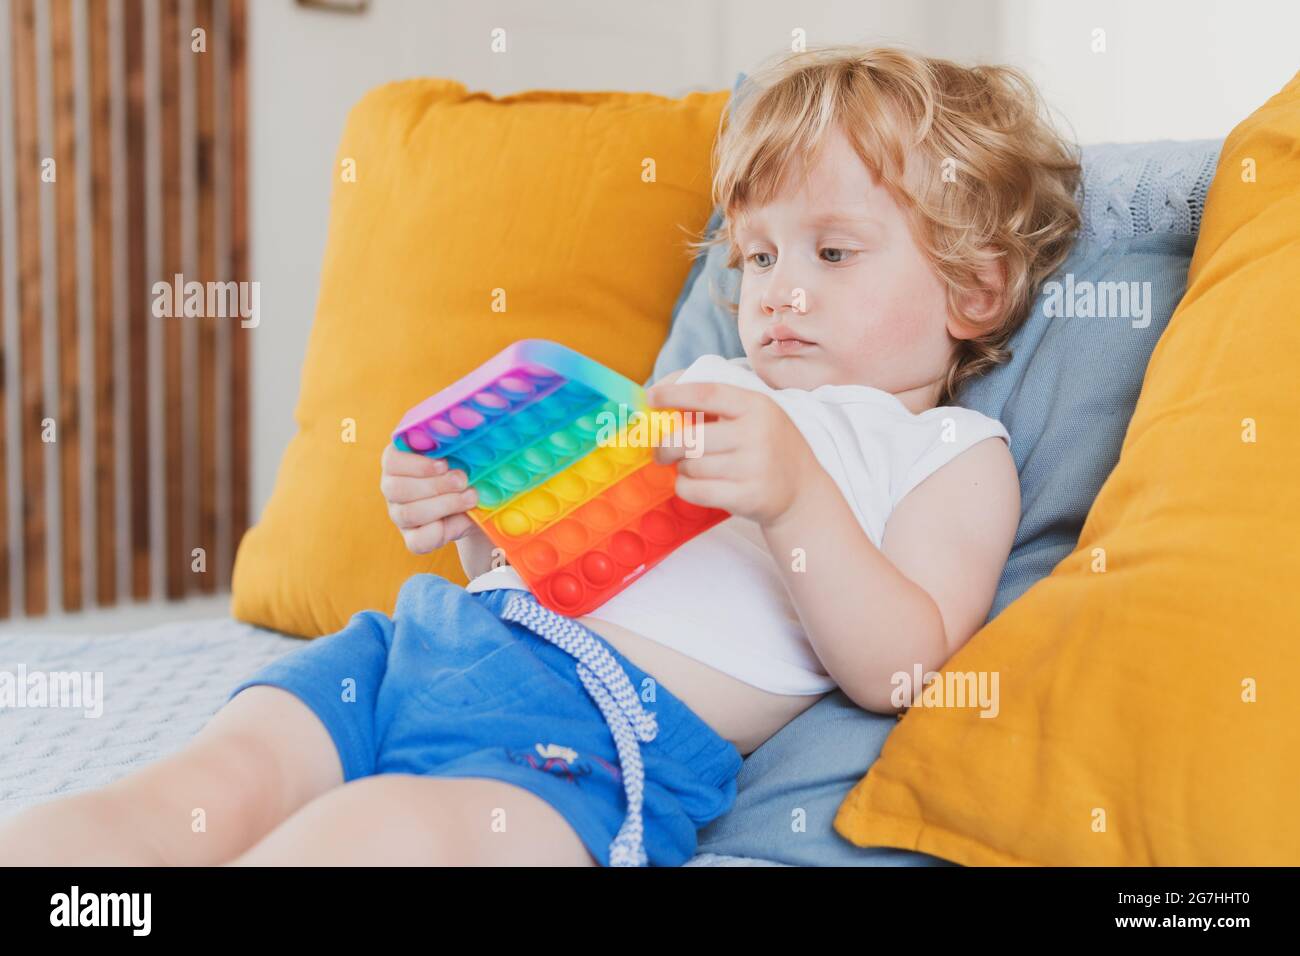 Kleiner Junge hält Anti-Stress sensorische Pop it Spielzeug in der Hand Junges Kleinkind Flechten mit Fidget sensorische Spielzeug Stockfoto